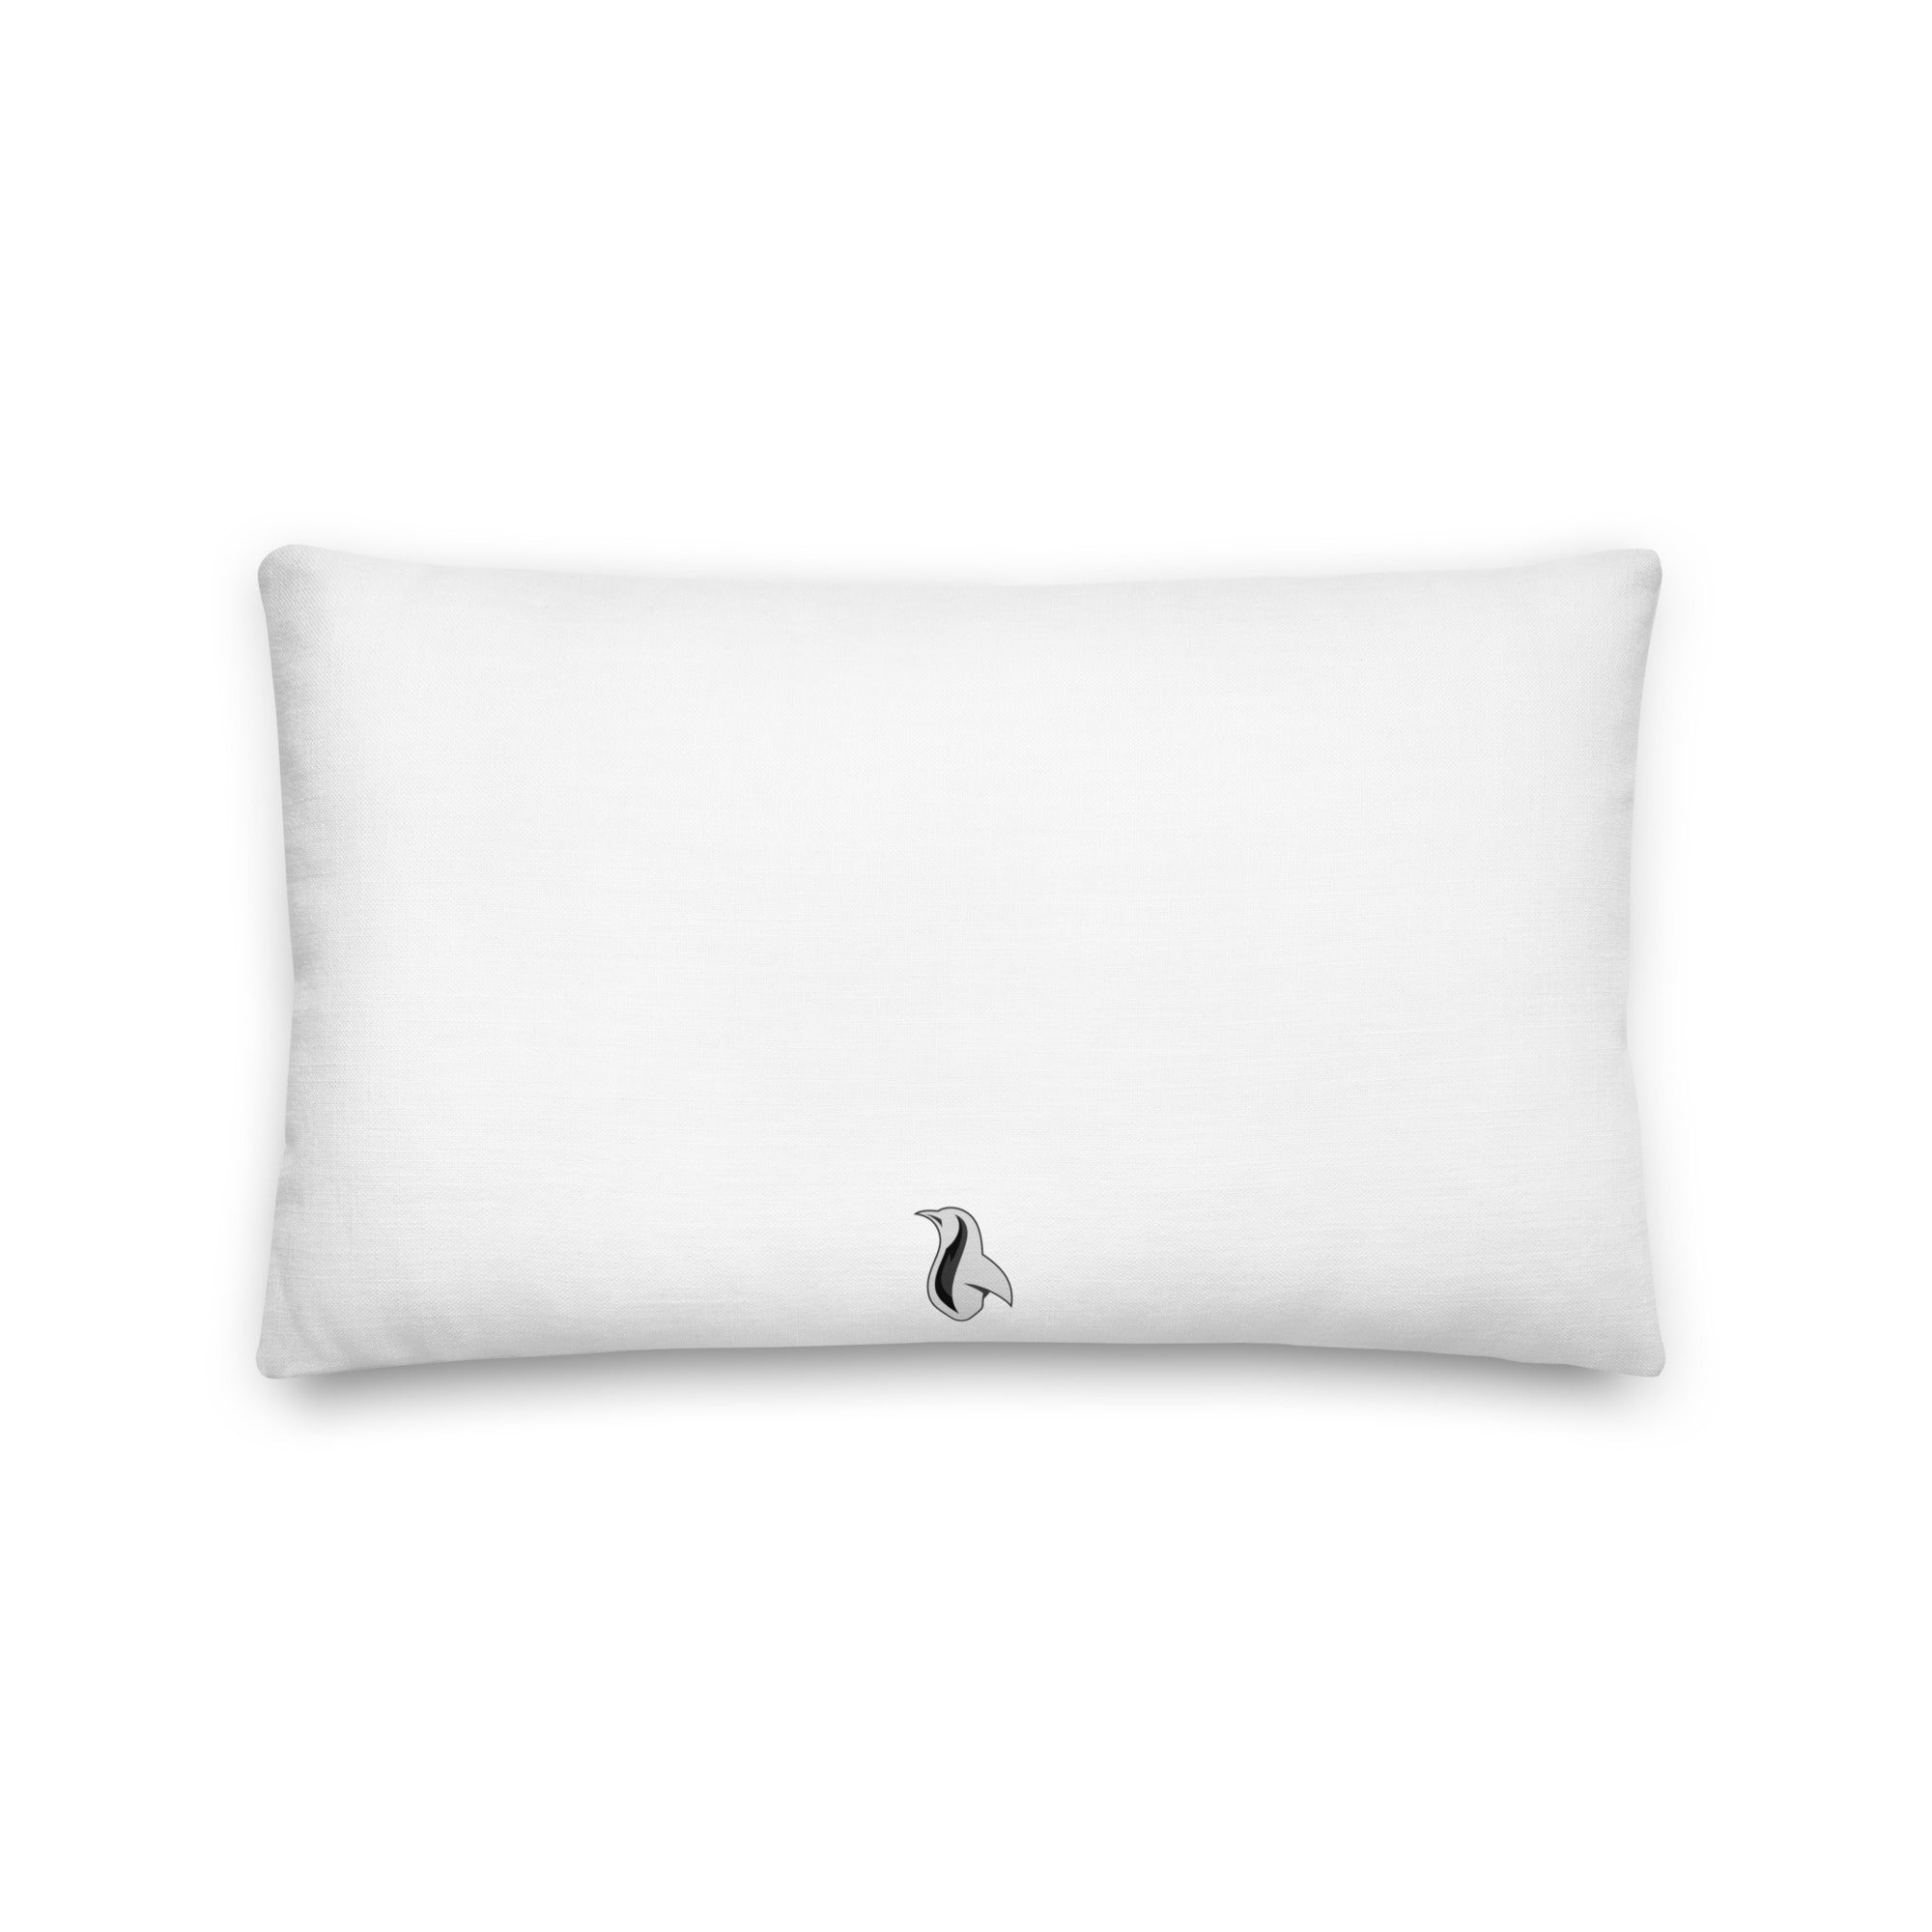 Cringer Premium Pillow